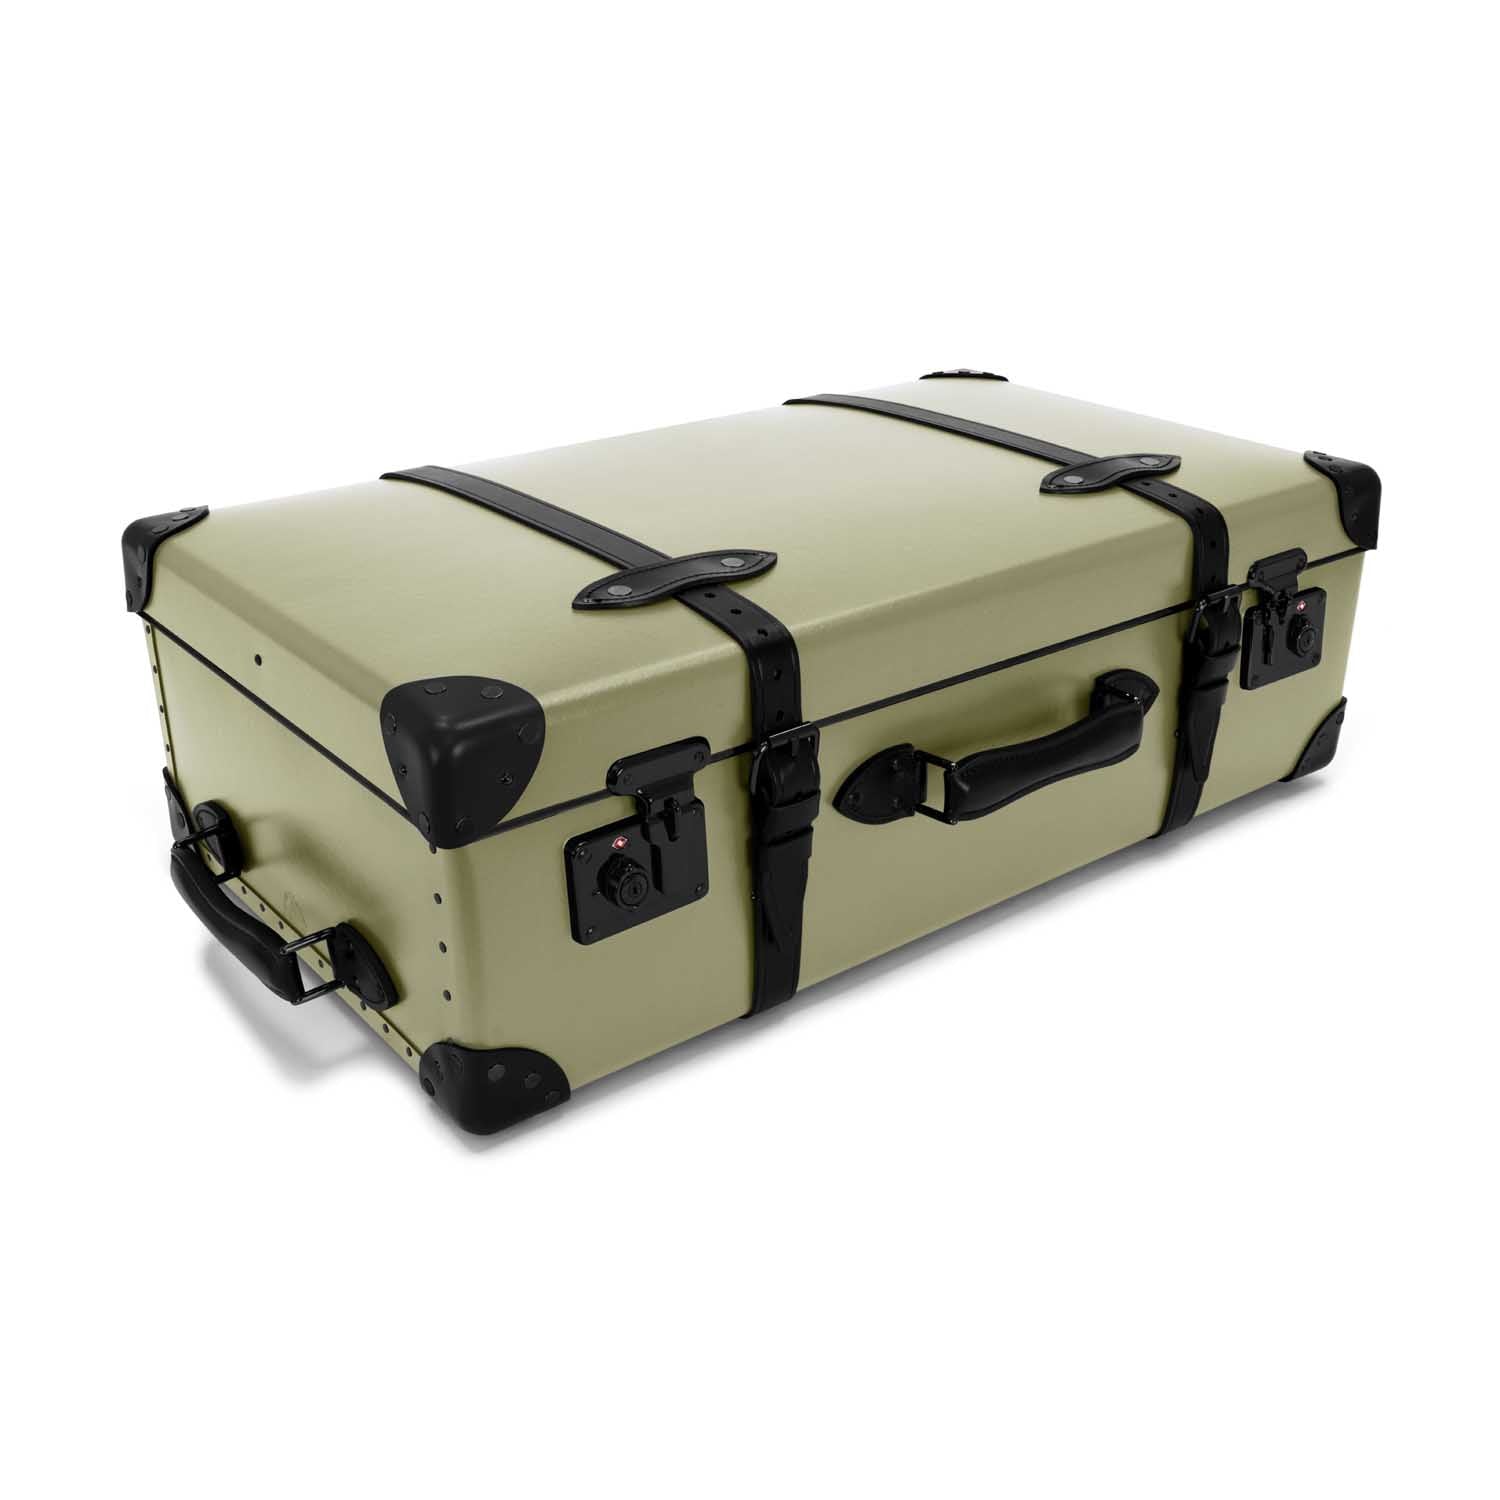 Centenary · Large Suitcase - 2 Wheels | Olive/Black/Black